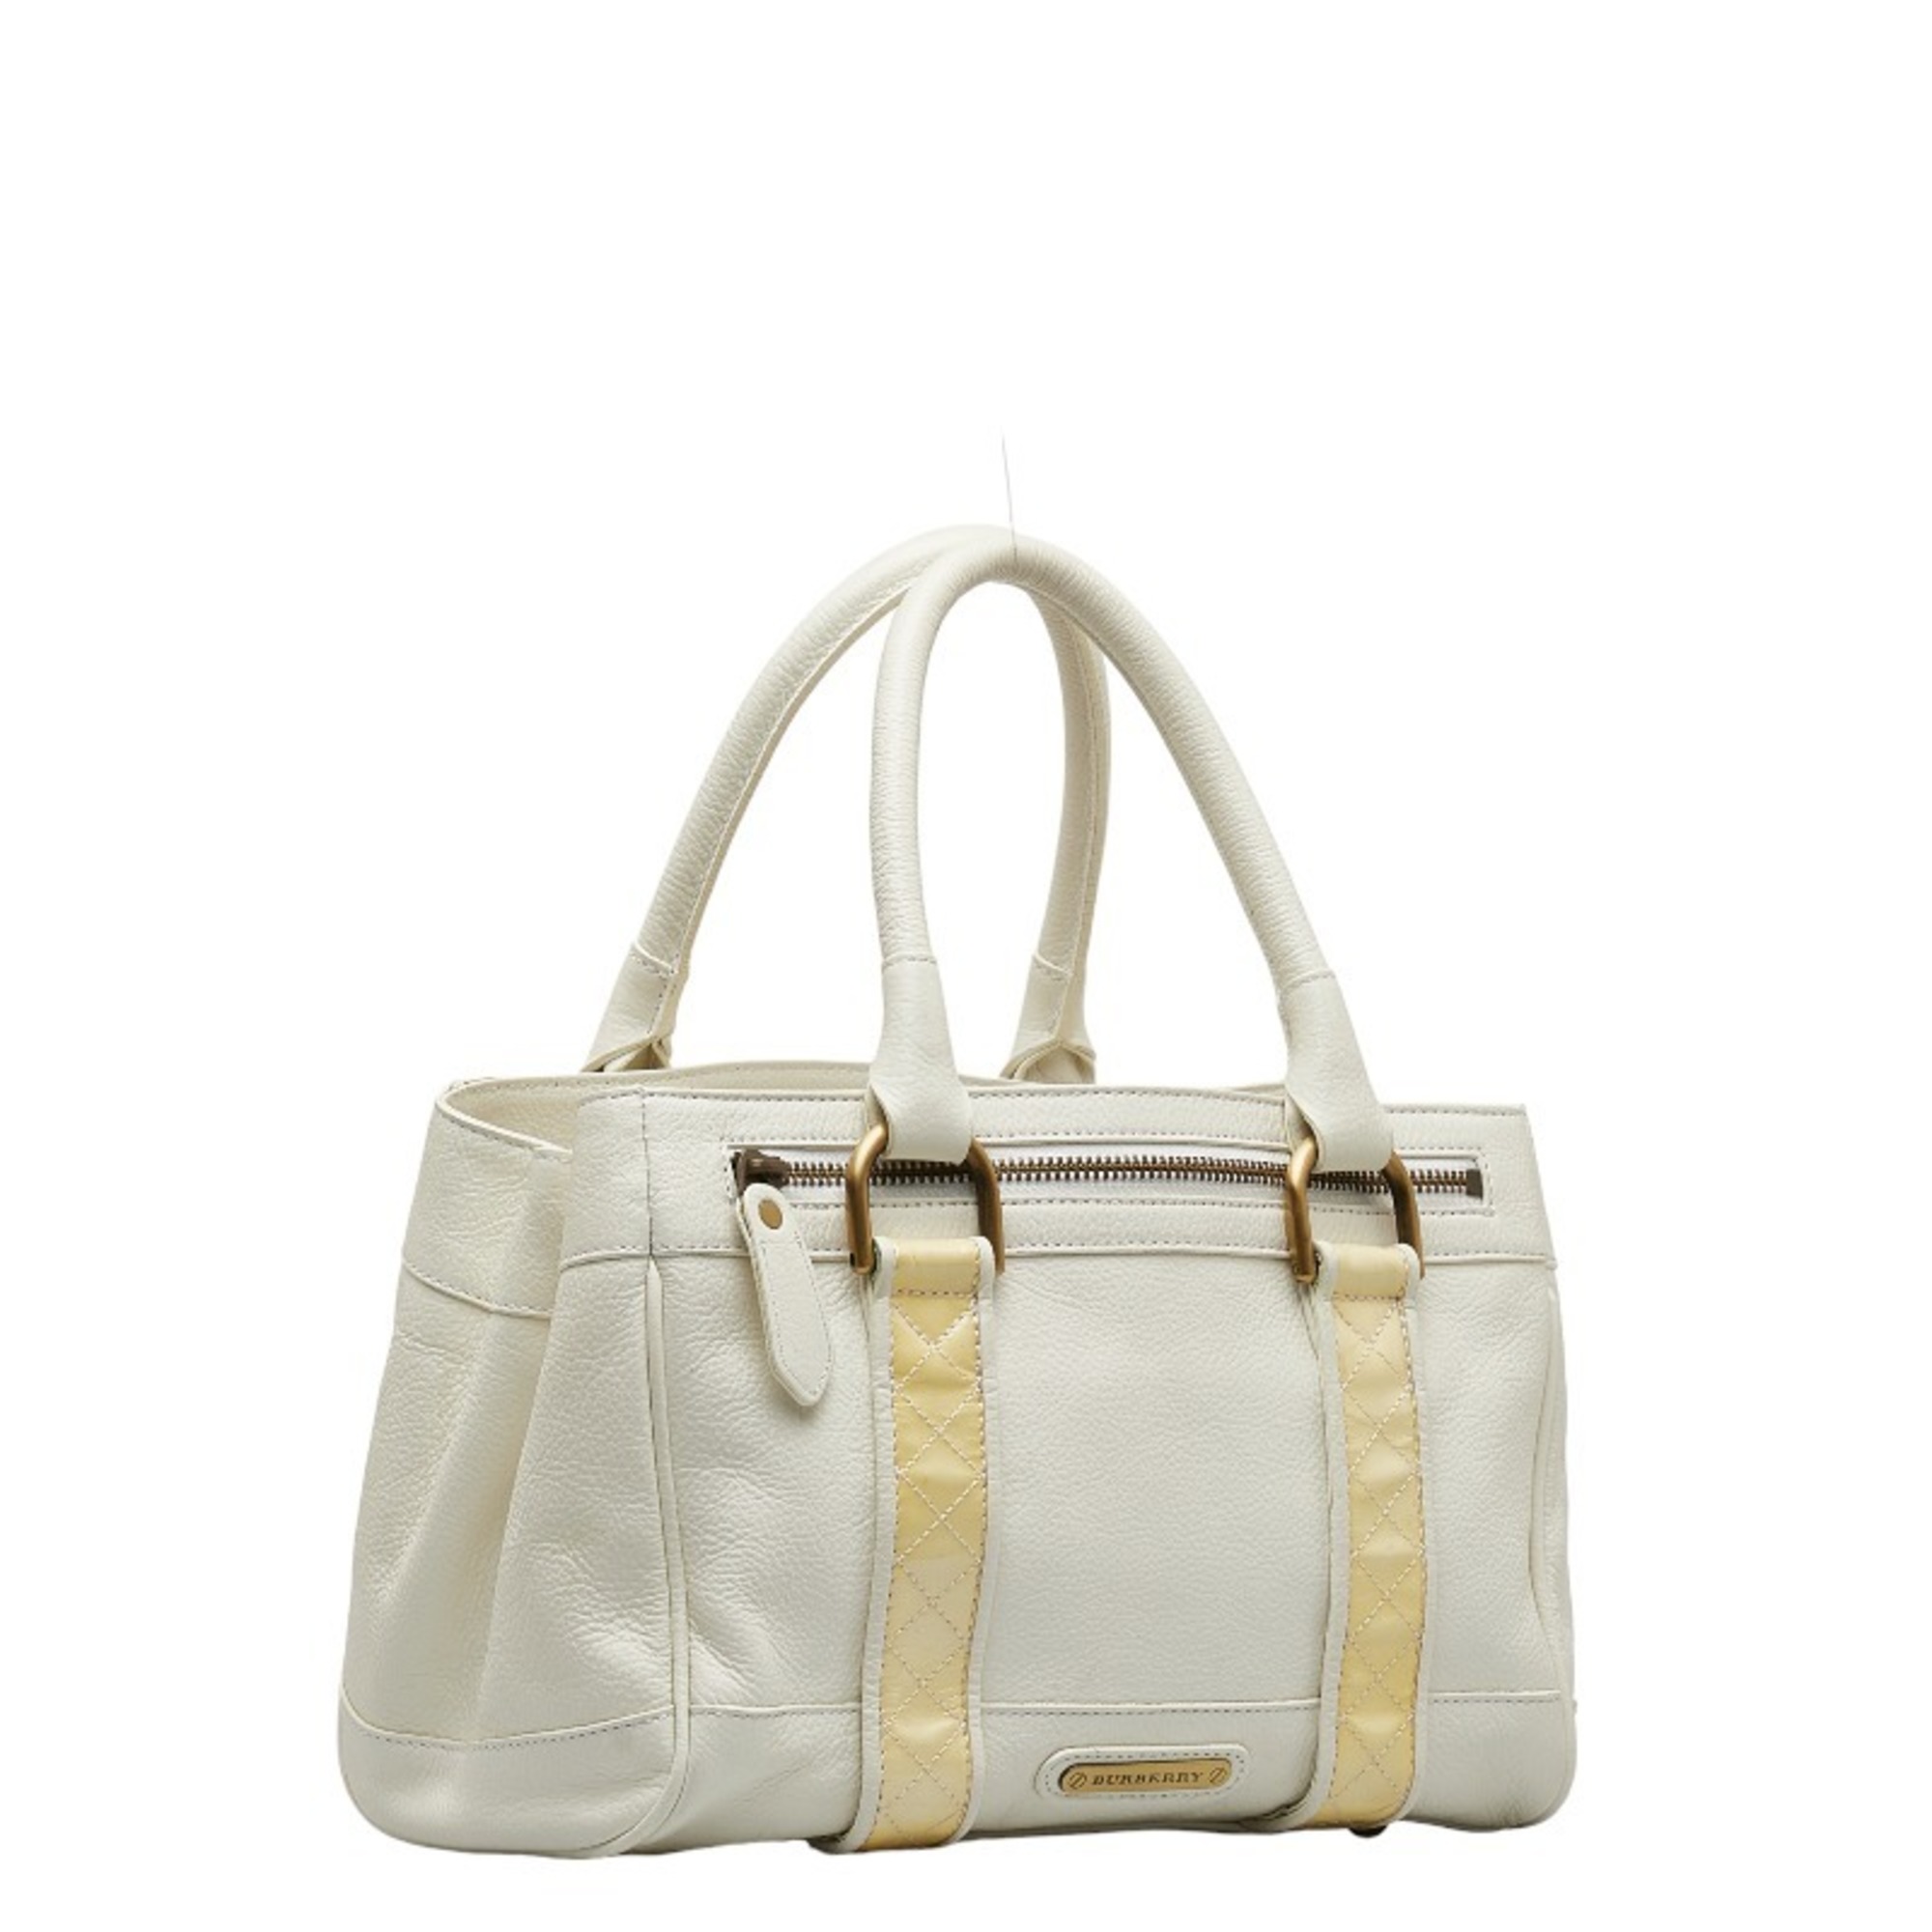 Burberry Nova Check Handbag White Leather Women's BURBERRY